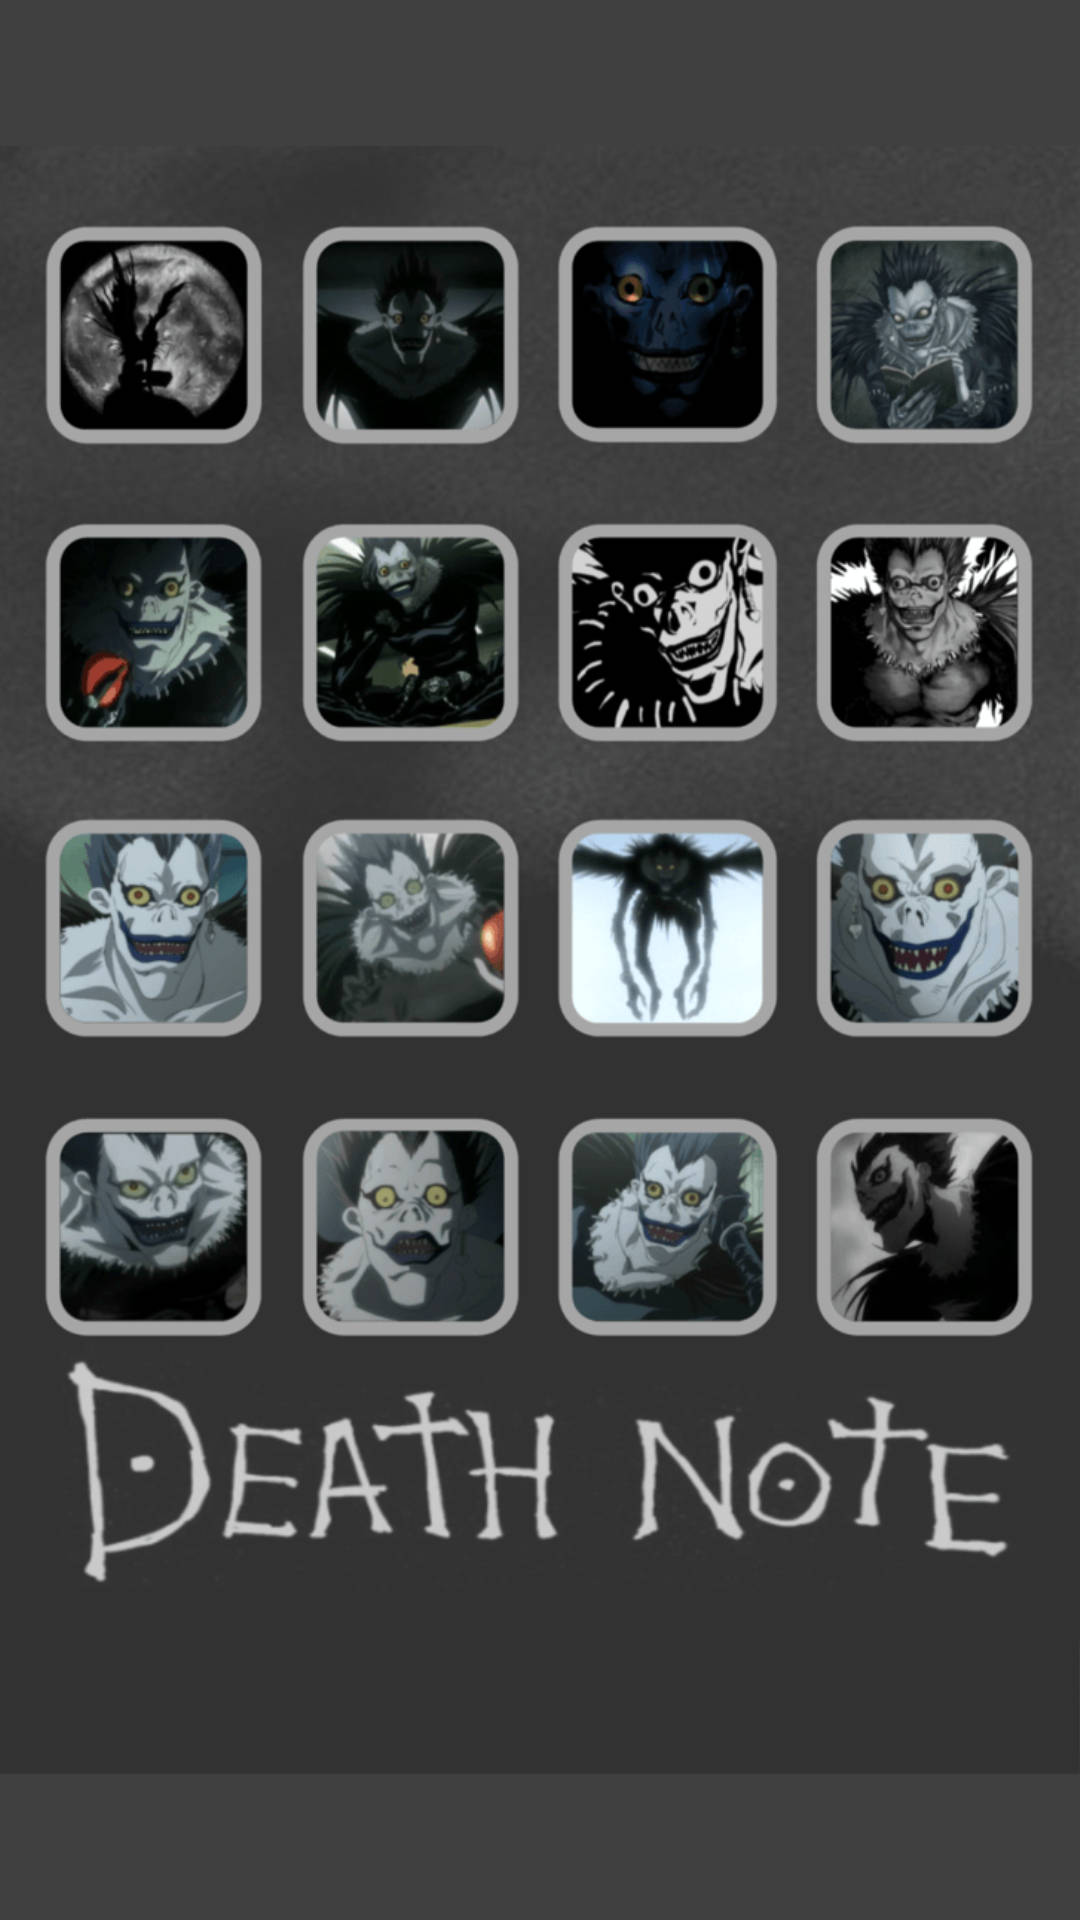 Imagensde Miniaturas Do Ryuk Do Death Note Para Iphone. Papel de Parede